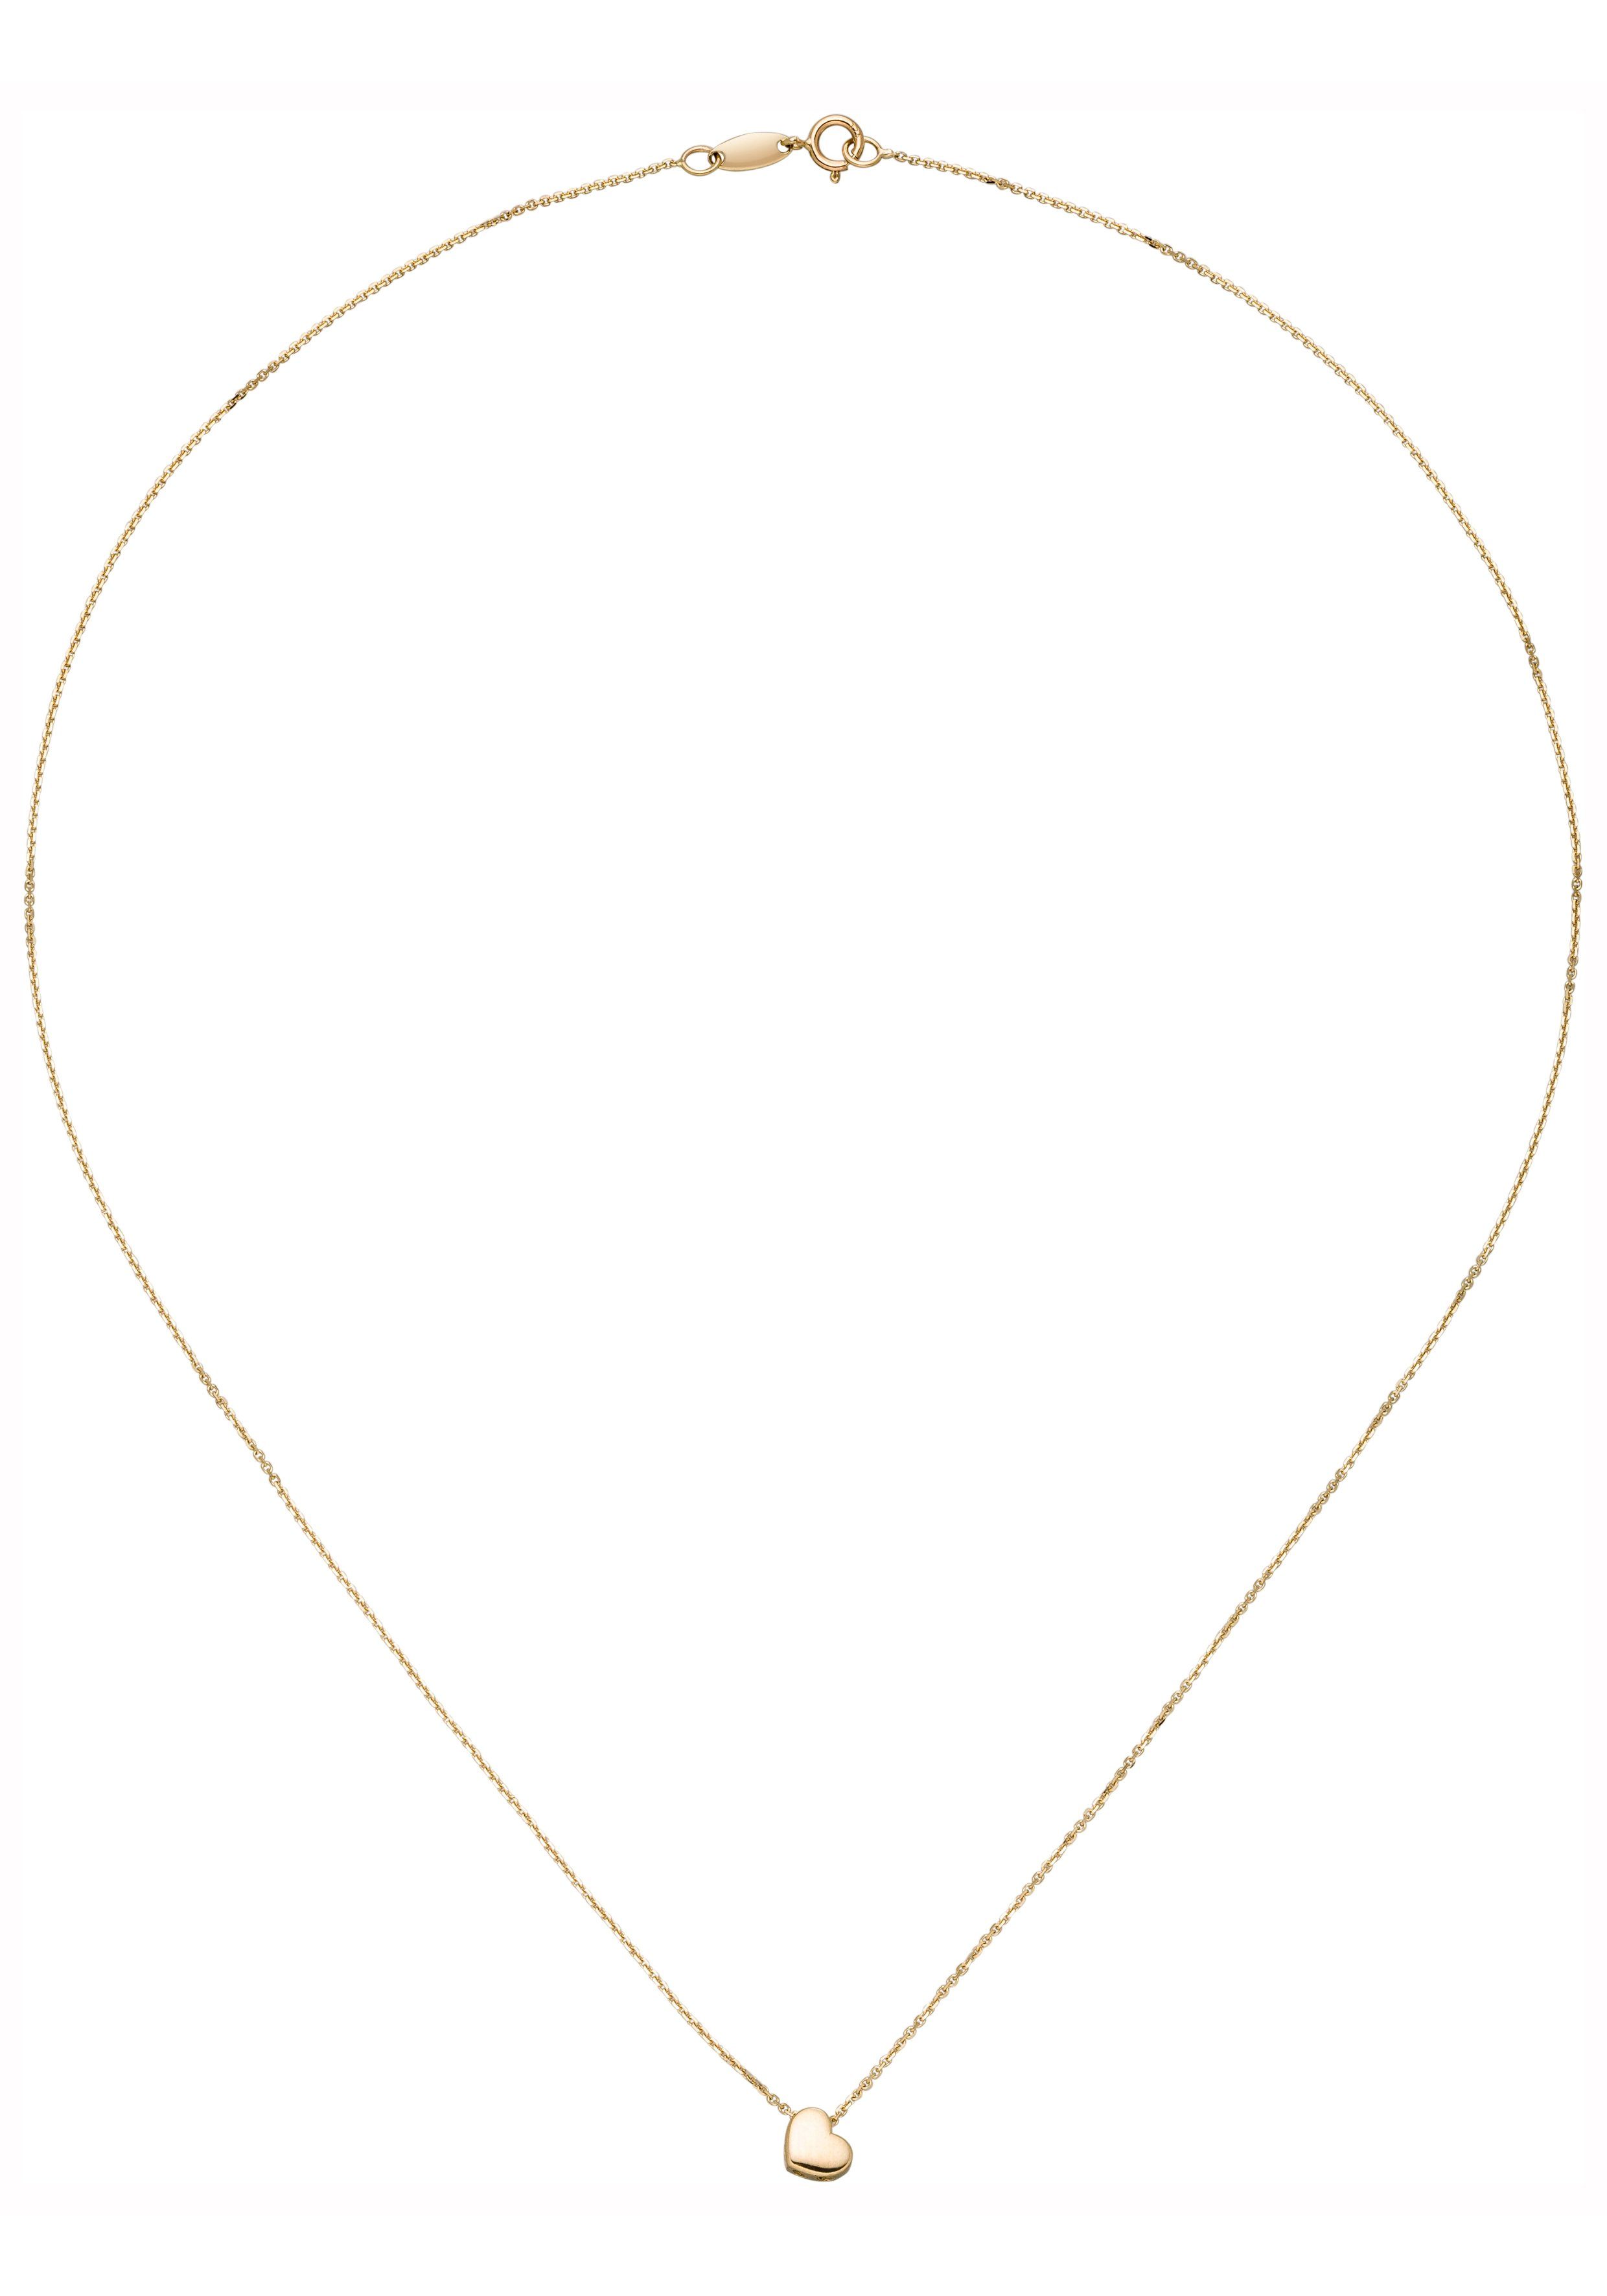 JOBO Kette mit Anhänger Herz, 375 Gold 42 cm